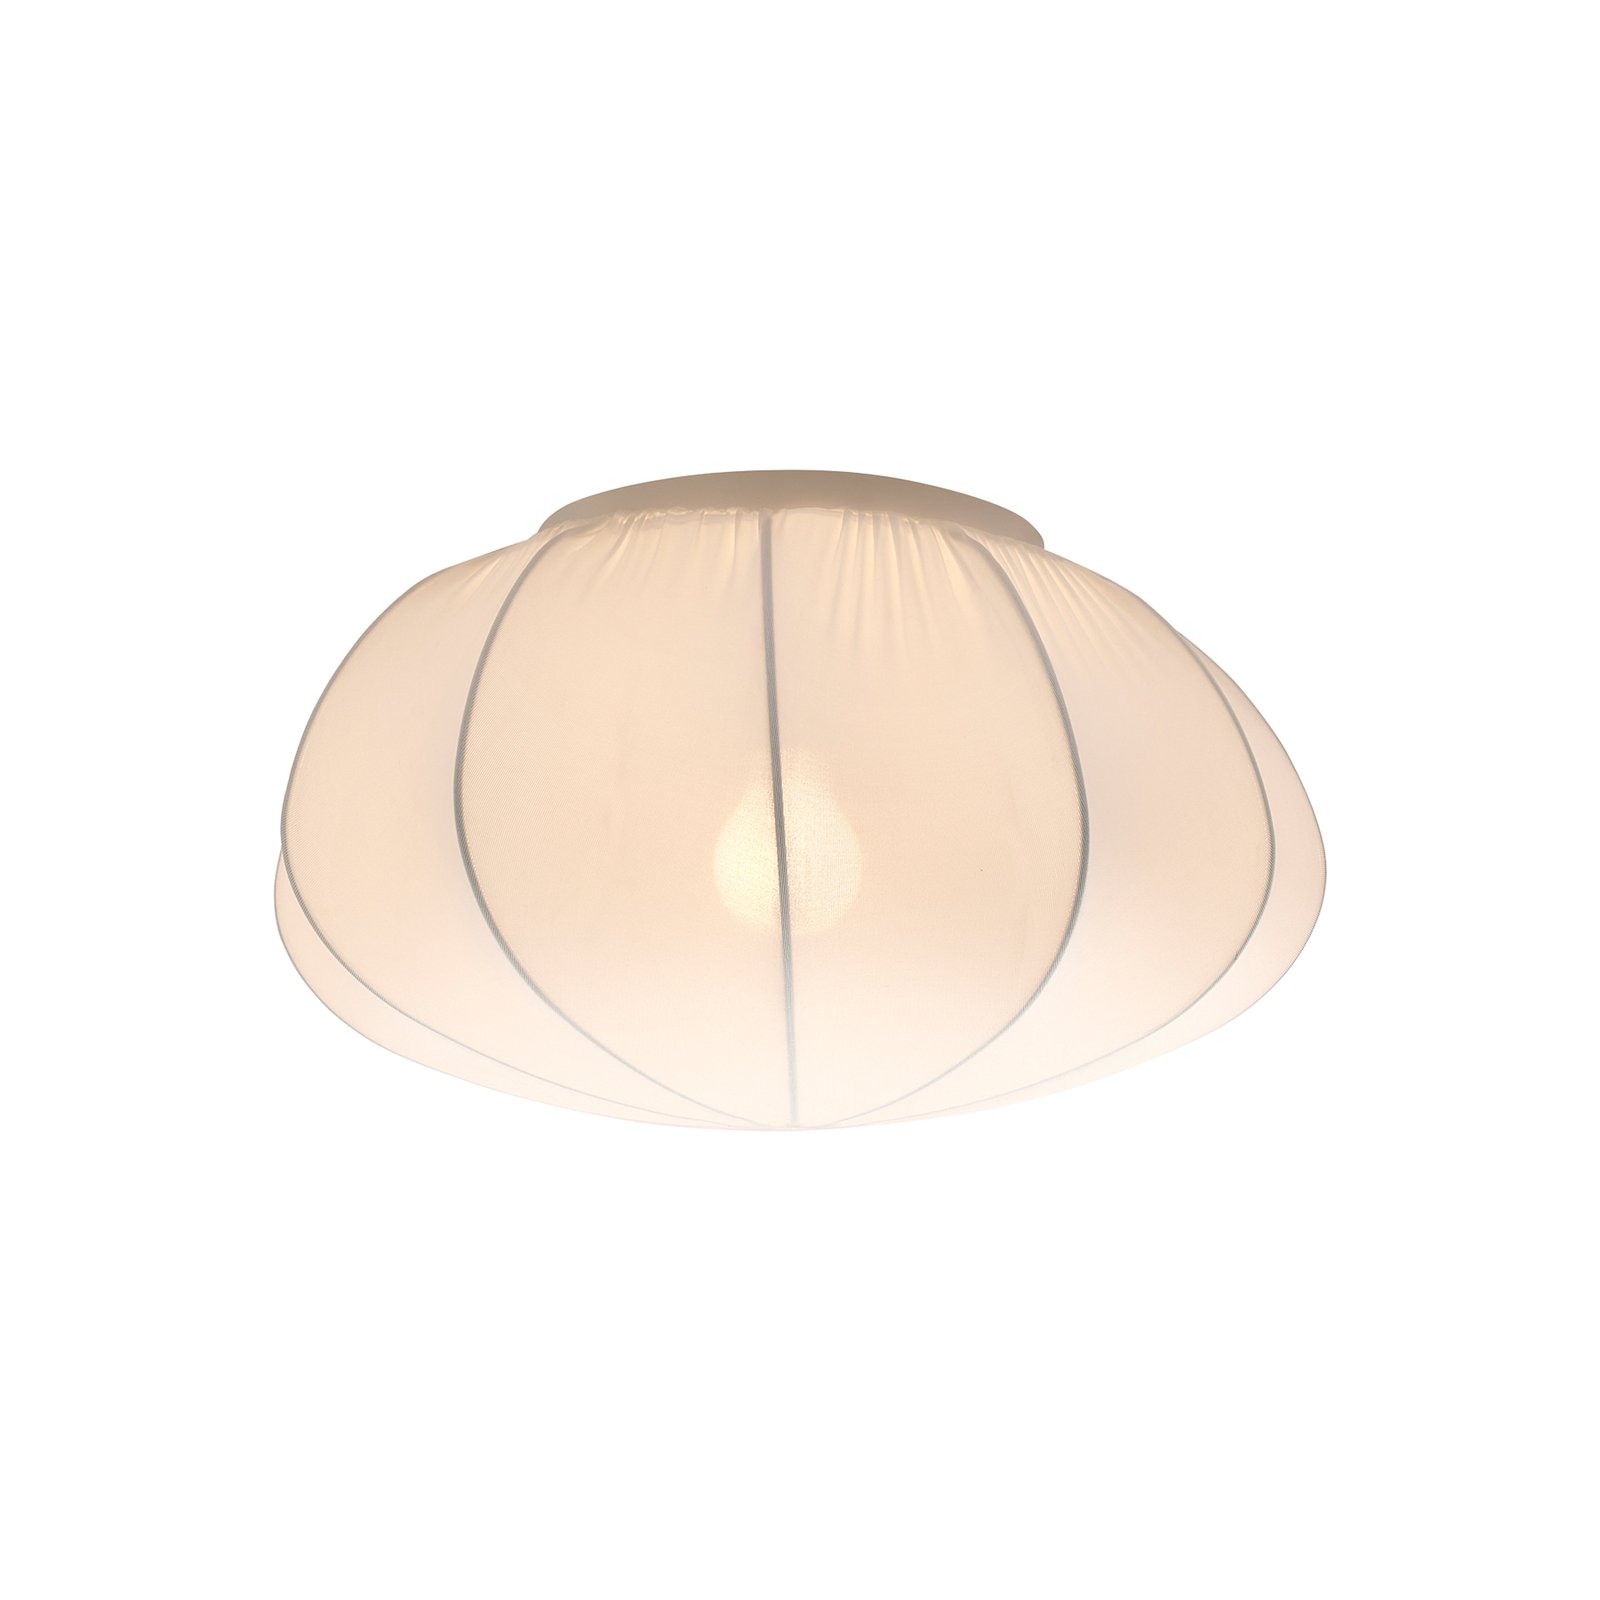 Plafondlamp Aeron, textiel, wit, diameter 40 cm